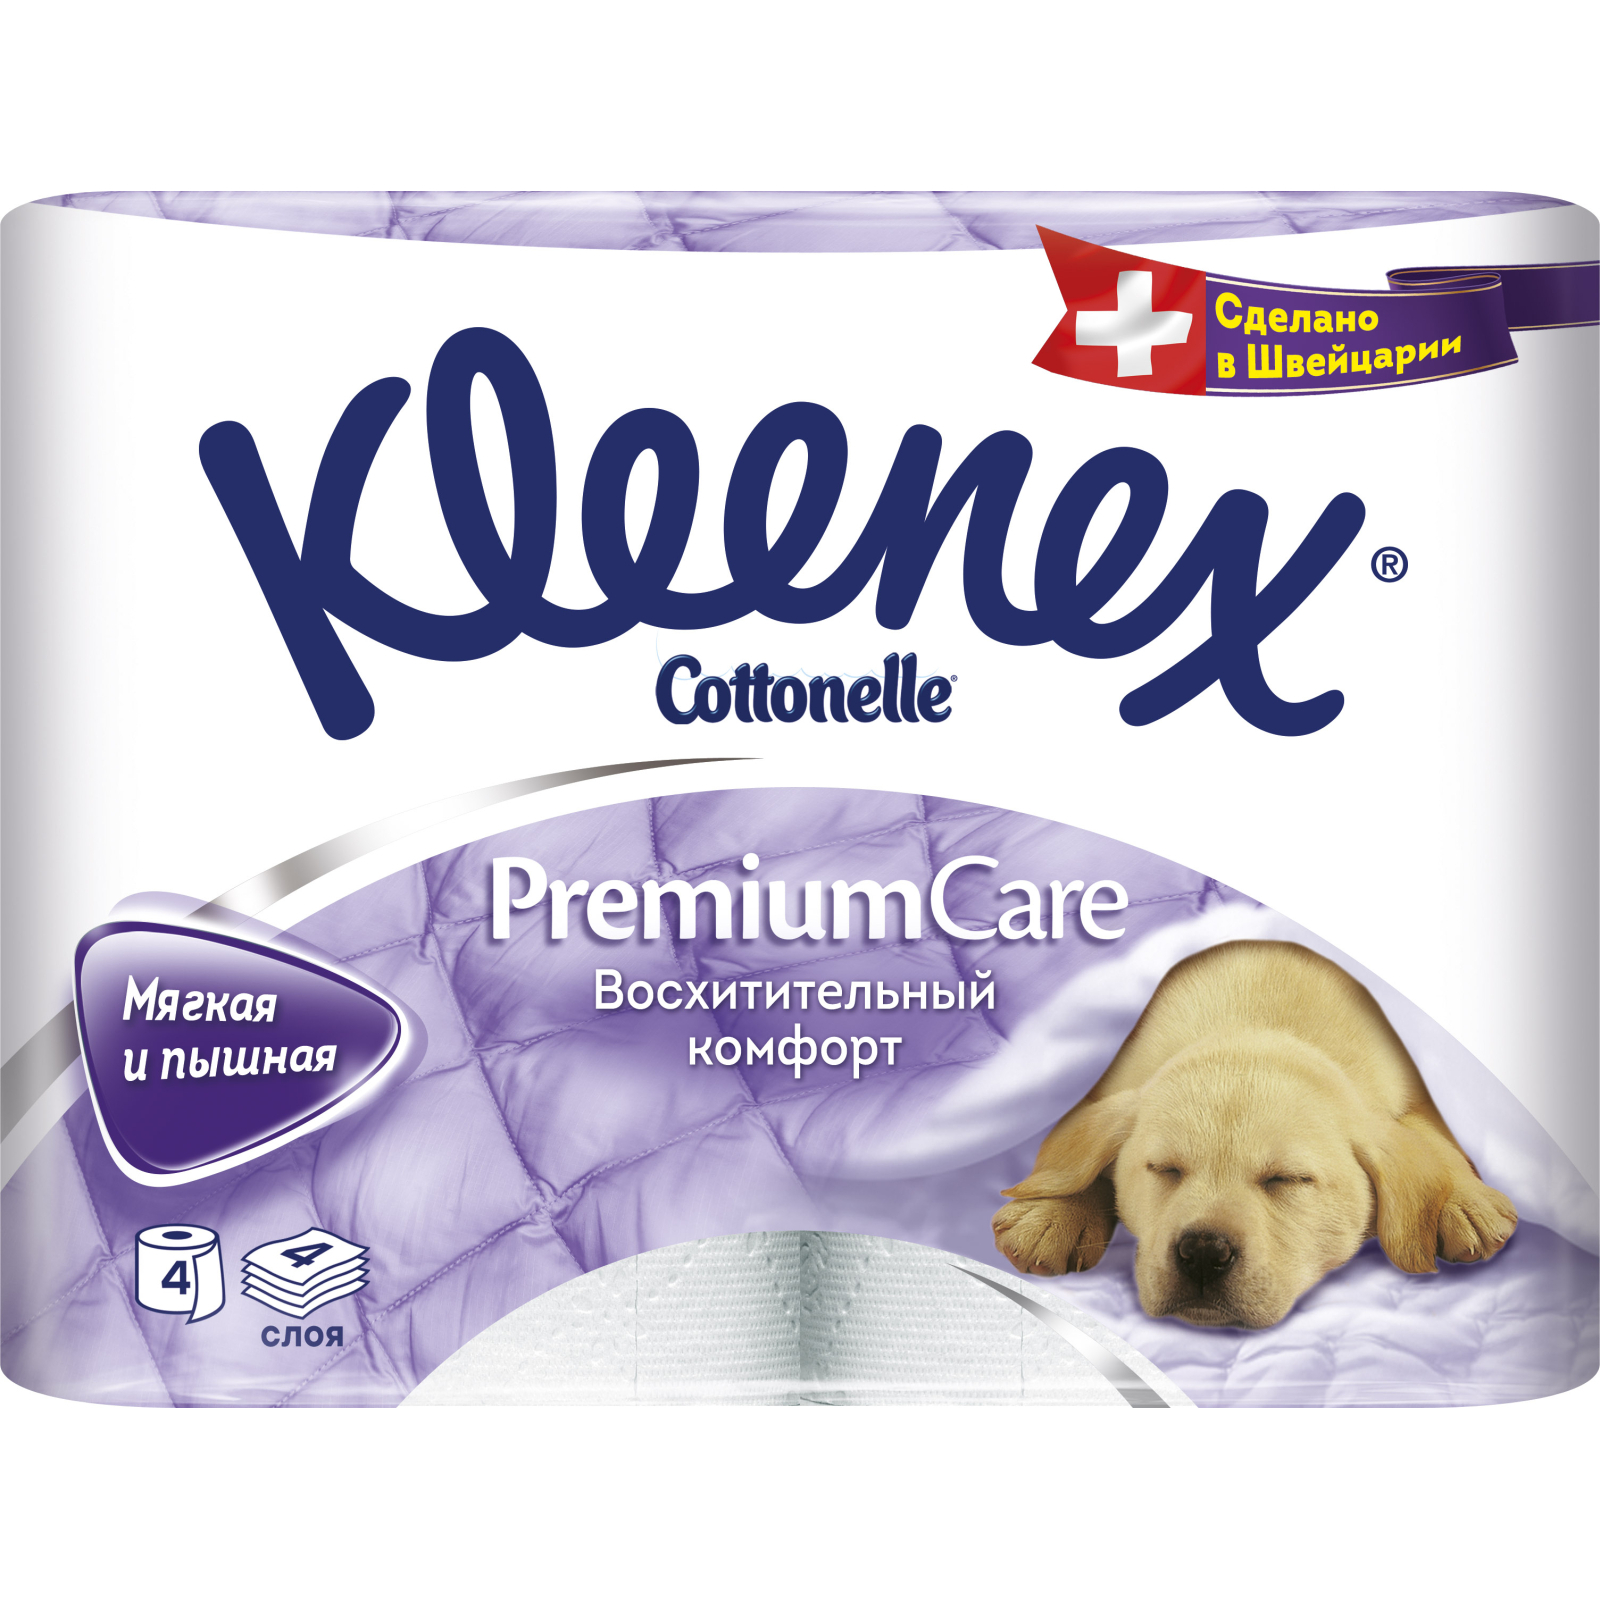 Туалетная бумага Kleenex Premium Care 140 отрывов 4 слоя 4 рулона (5029053033914)